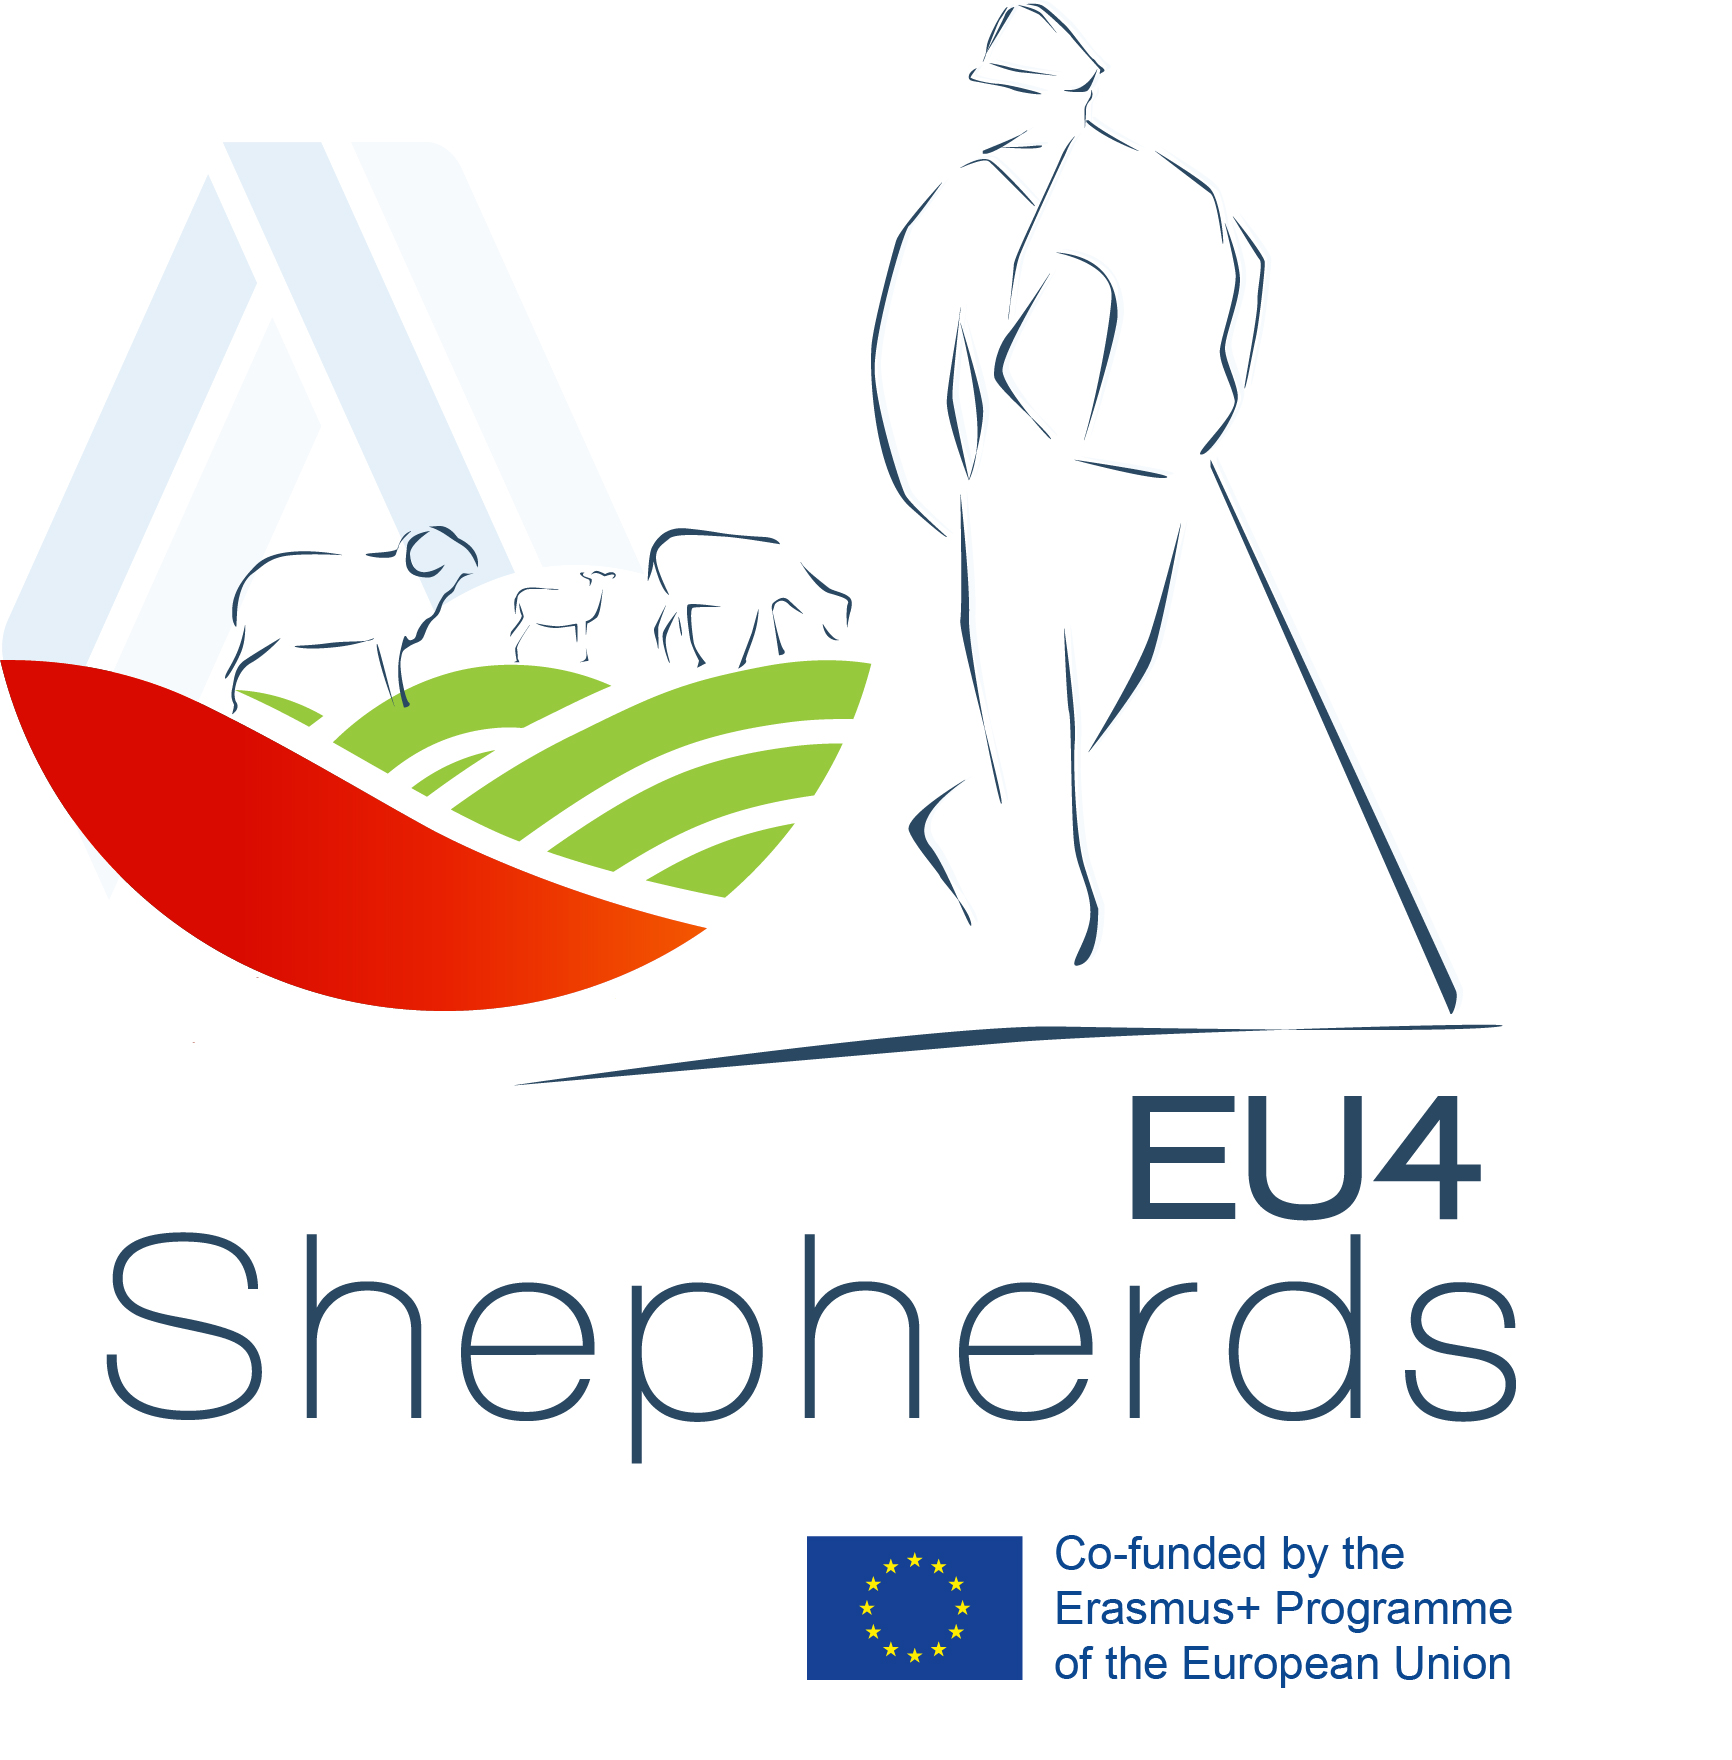 EU4 SHEPHERDS